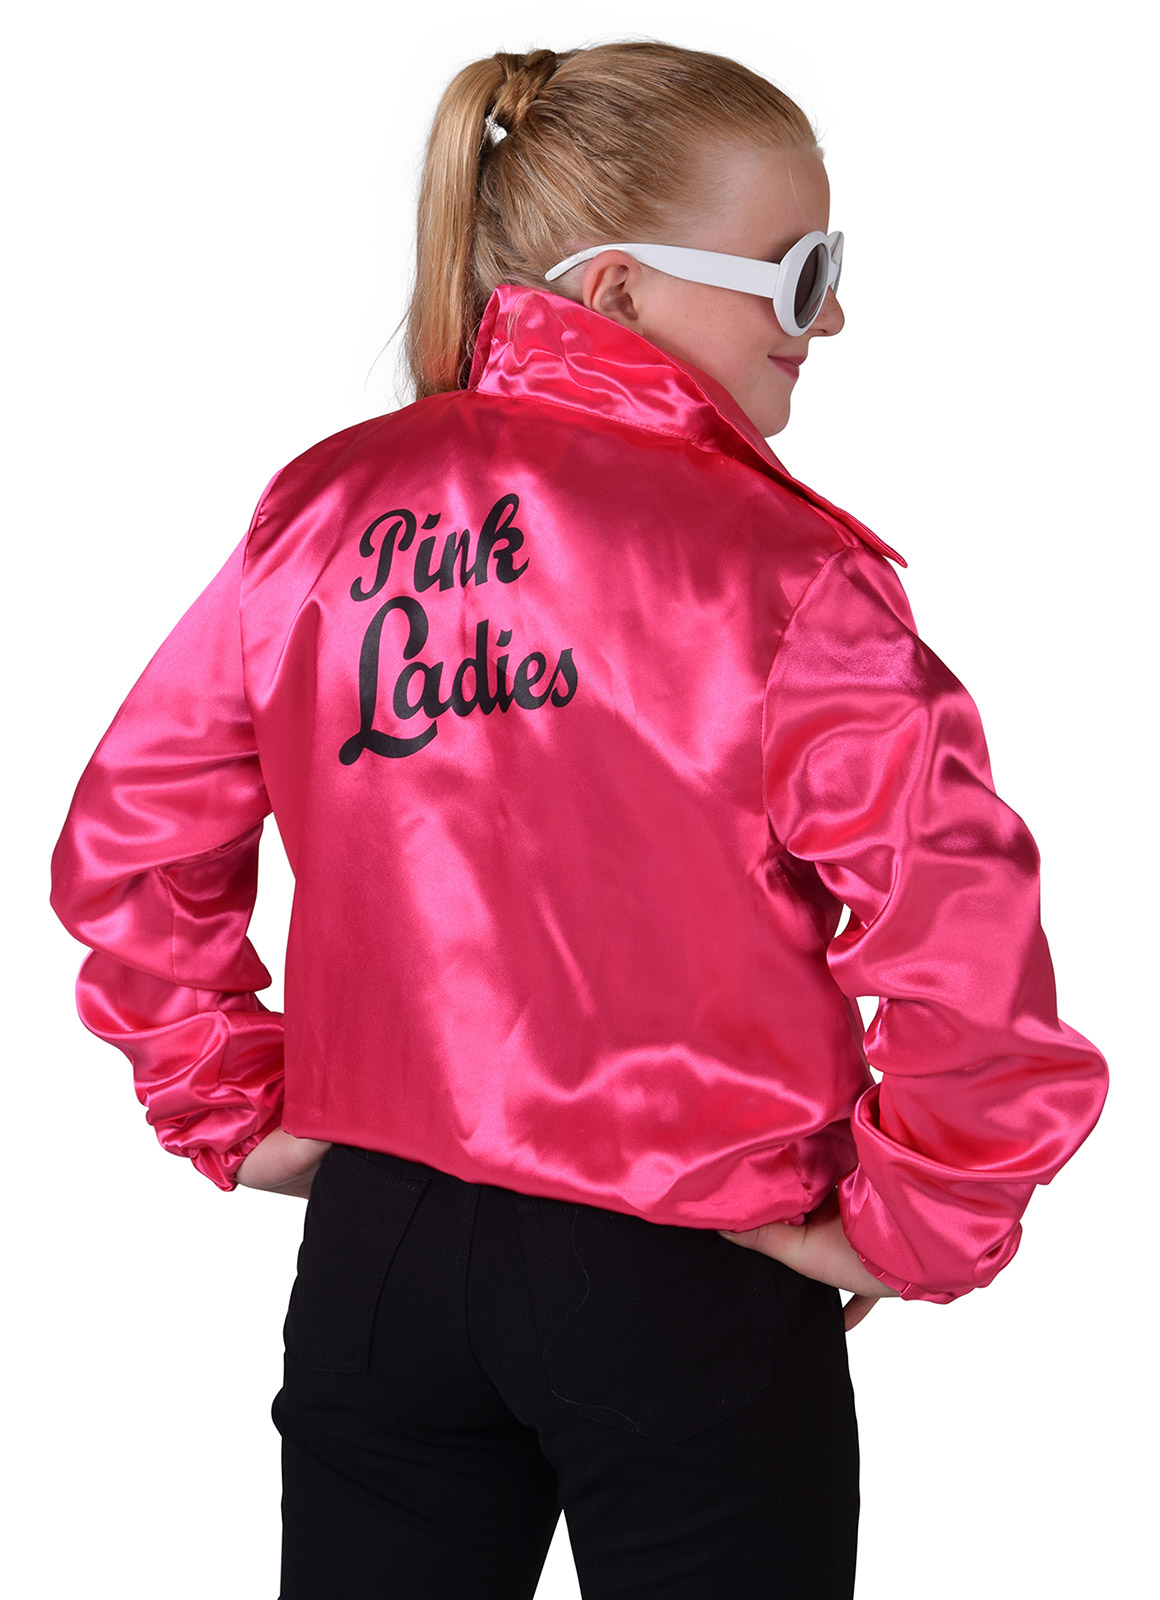 Pink lady - Willaert, verkleedkledij, carnavalkledij, carnavaloutfit, feestkledij, jaren 60 , r&r, sixties, hippie, flowerpower